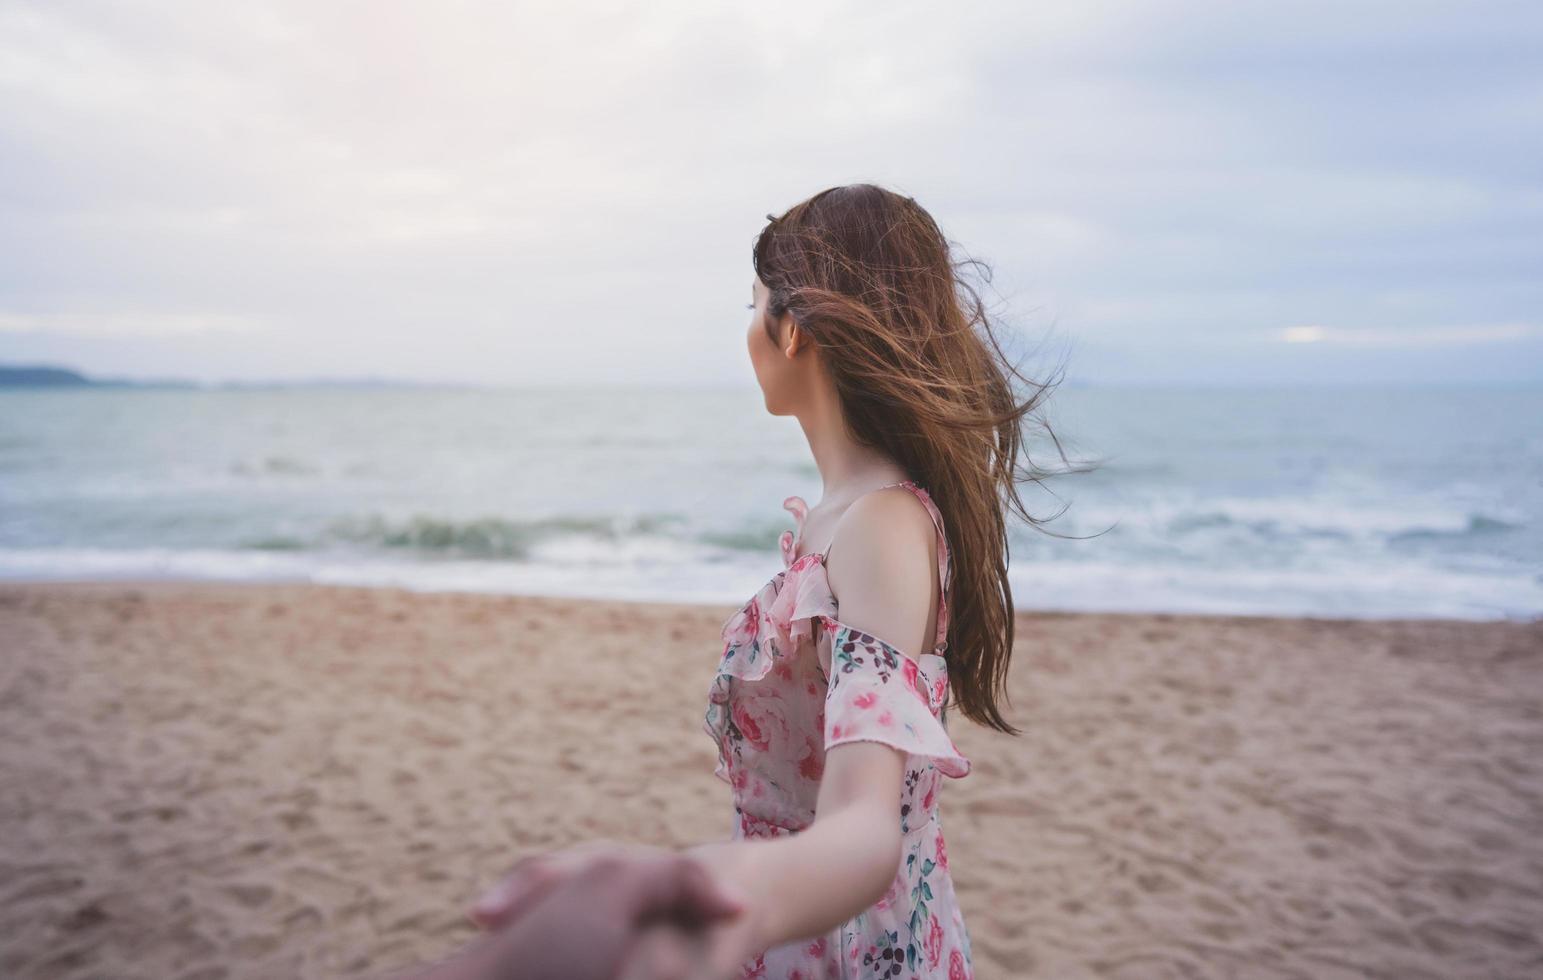 pareja de luna de miel tomándose de la mano y sígueme en la playa foto